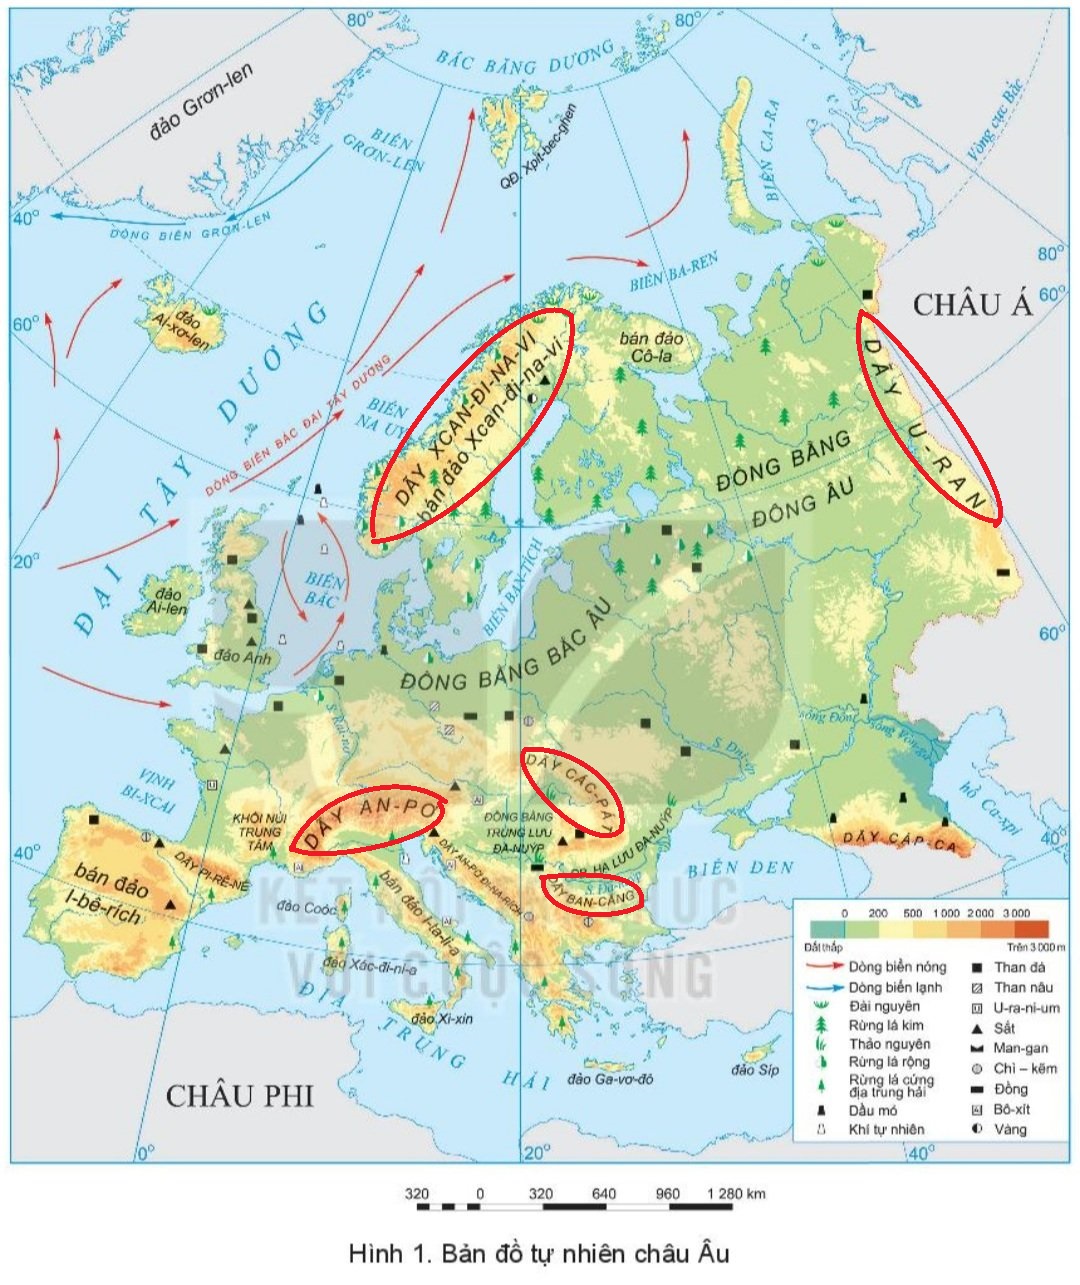 SGK Địa lý Châu Âu: Khám phá địa lý Châu Âu thông qua sách giáo khoa Địa lý, chắc chắn bạn sẽ tìm được những thông tin thú vị và bổ ích về lục địa sở hữu nhiều tài nguyên và di sản văn hóa.